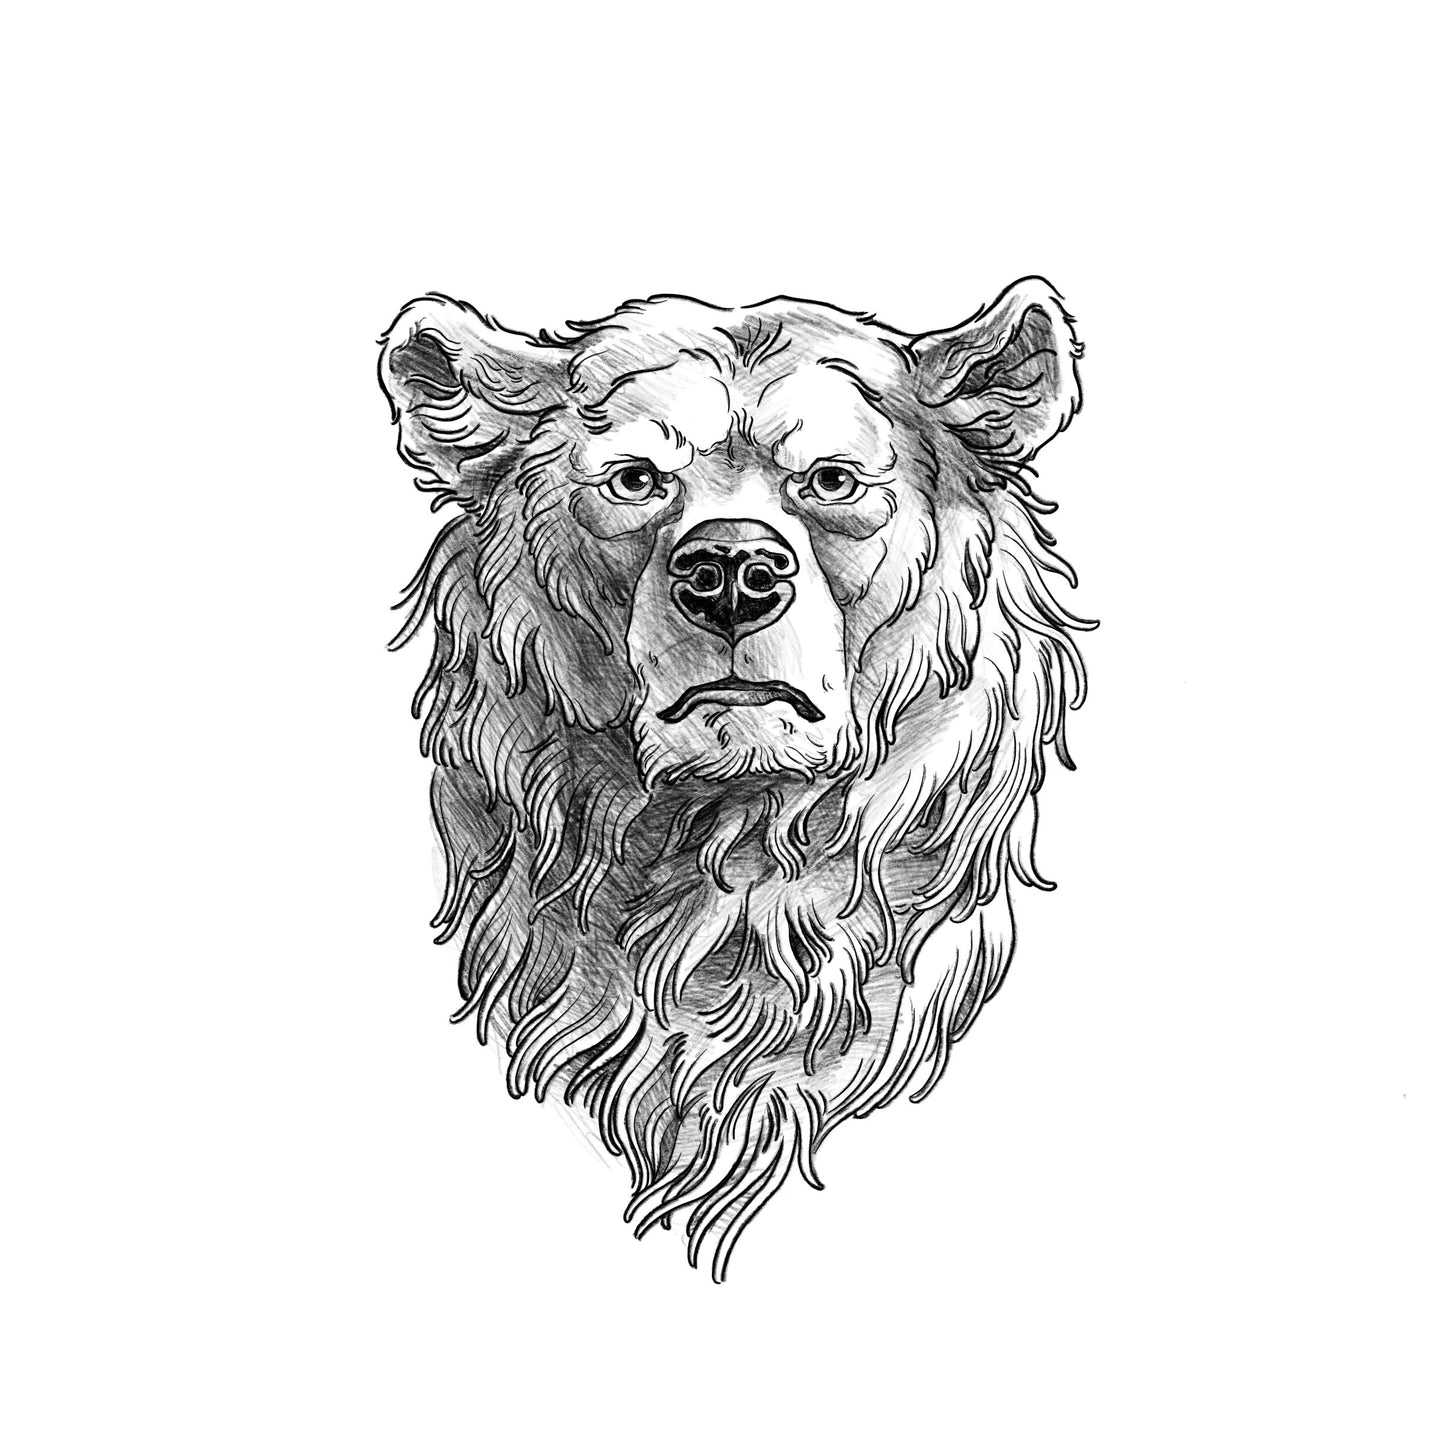 PAGU - Urso - Desenhos prontos para tatuar